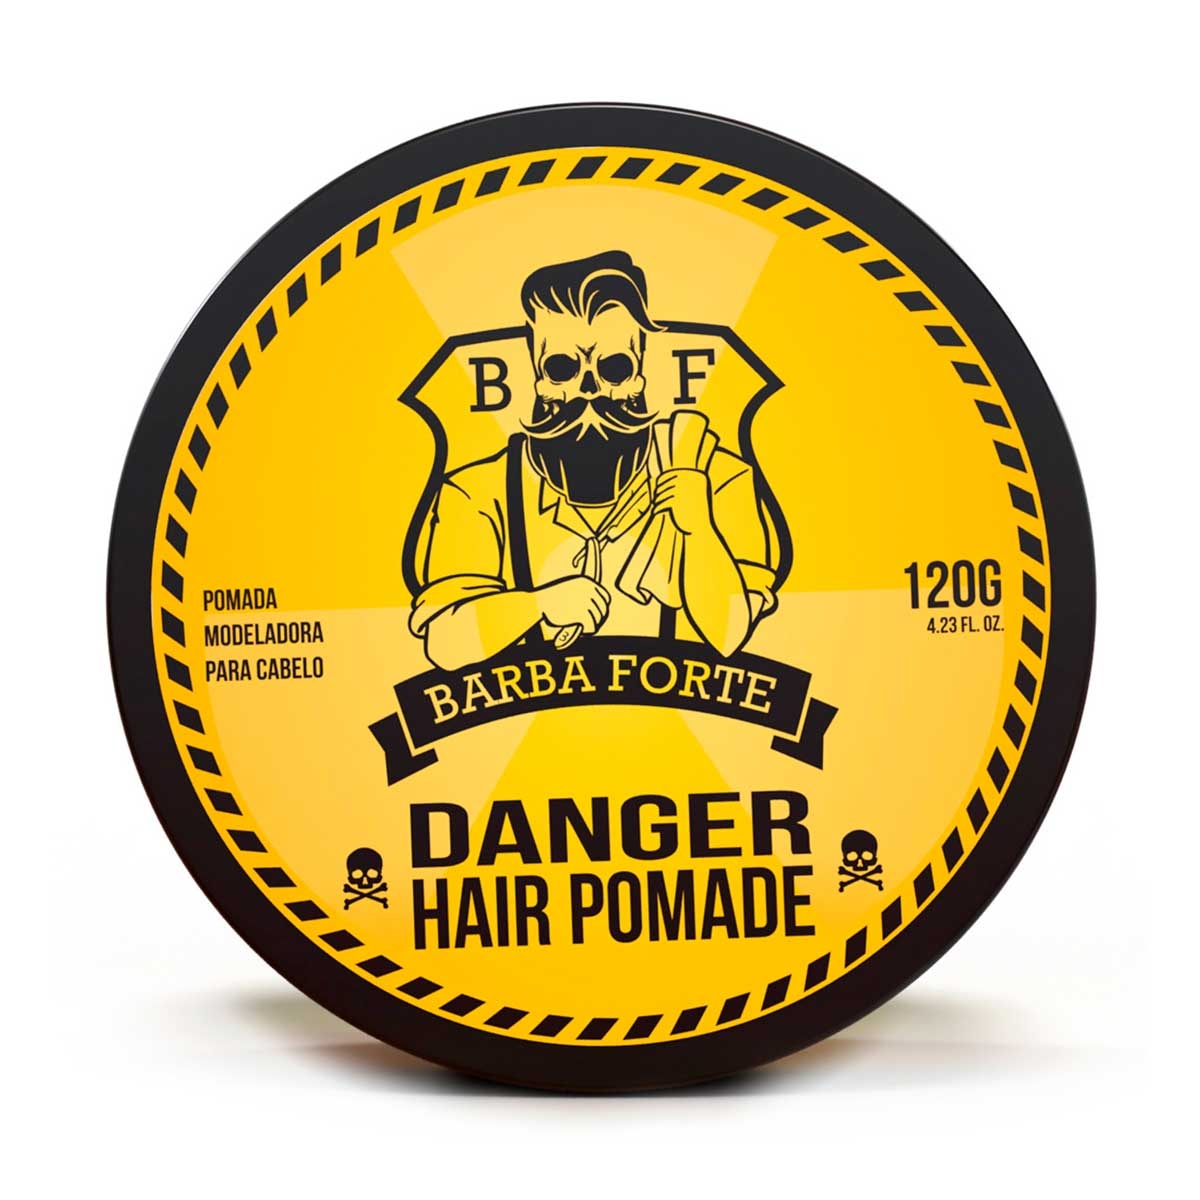 Pomada Modeladora para Cabelo Barba Forte Danger com 120g 120g